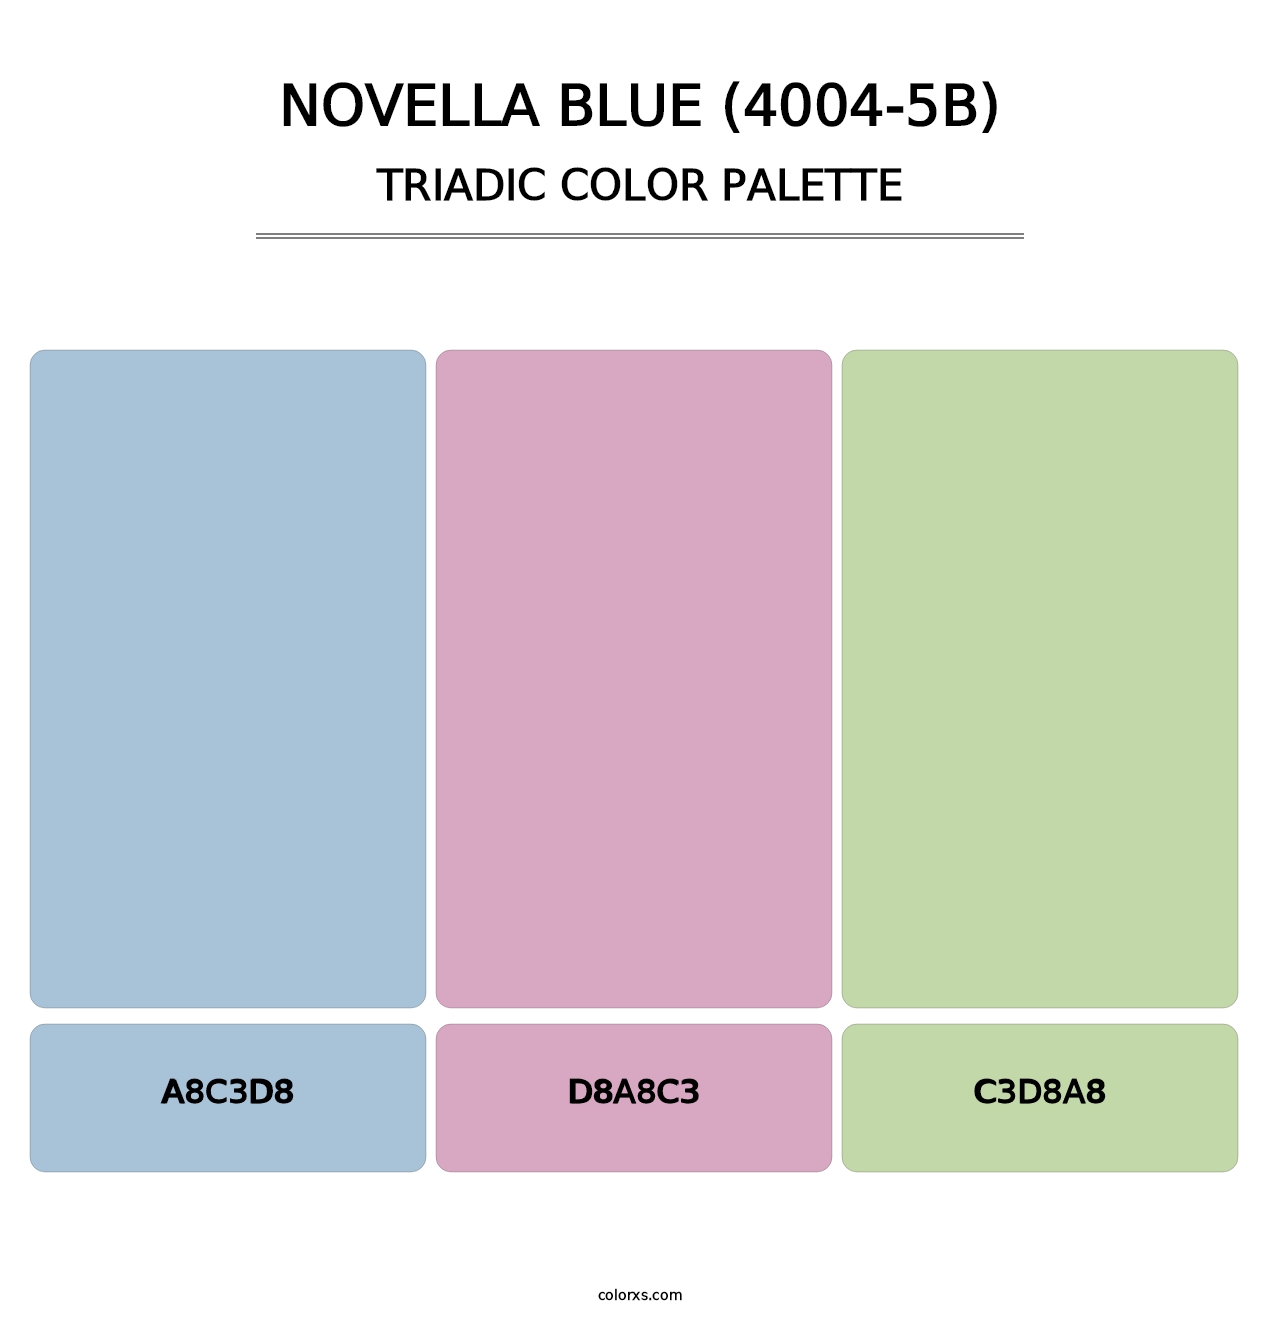 Novella Blue (4004-5B) - Triadic Color Palette